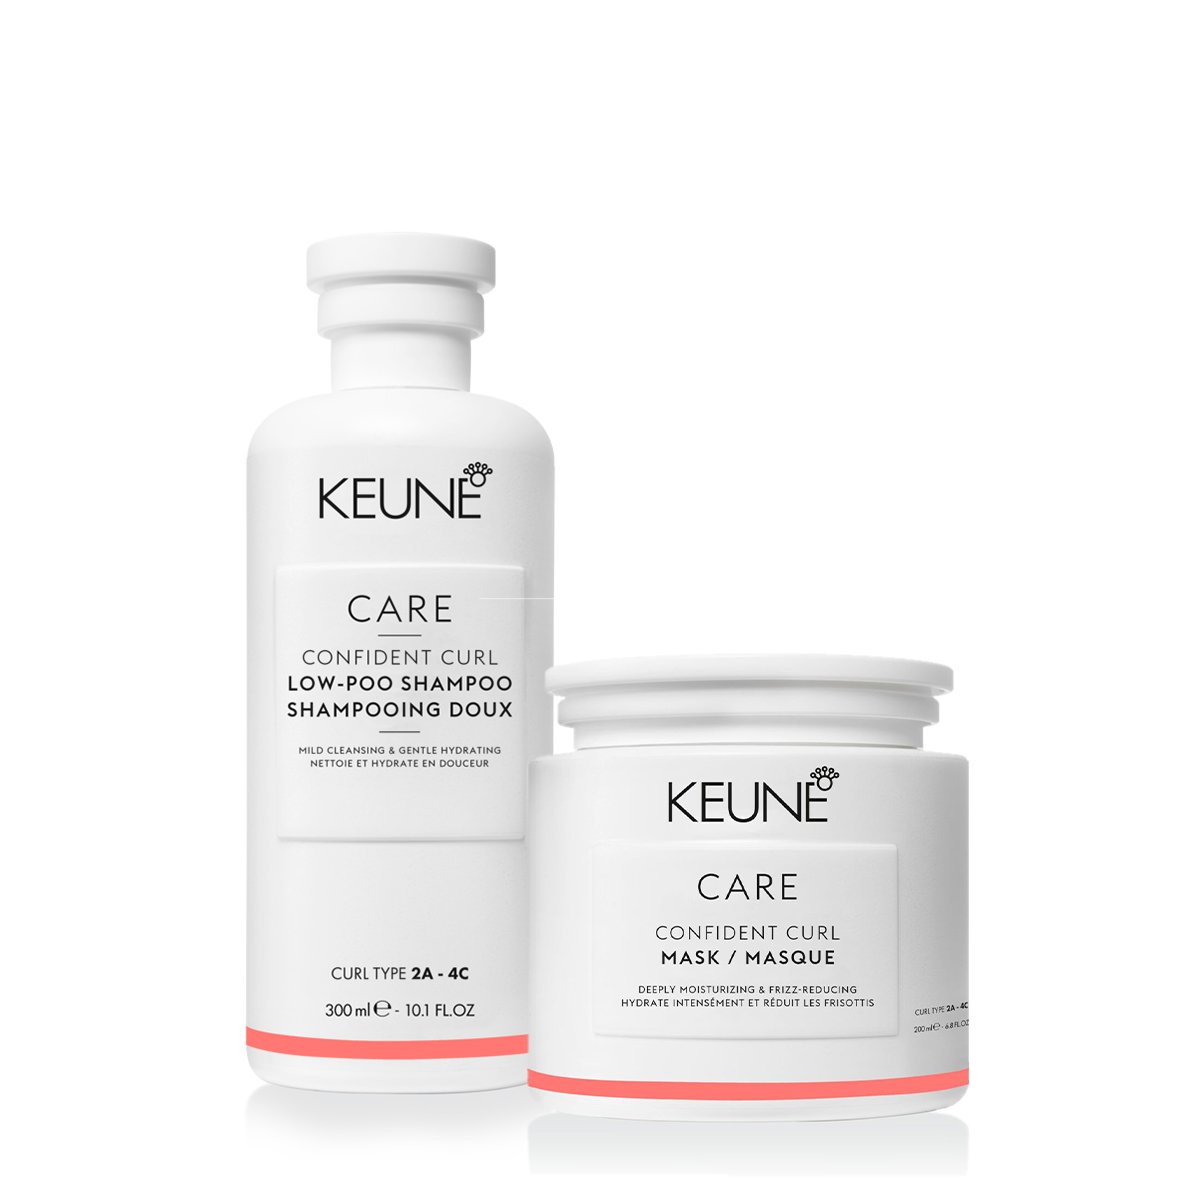 Kit Keune Care Confident Curl Shampoo Mascara (2 produtos)